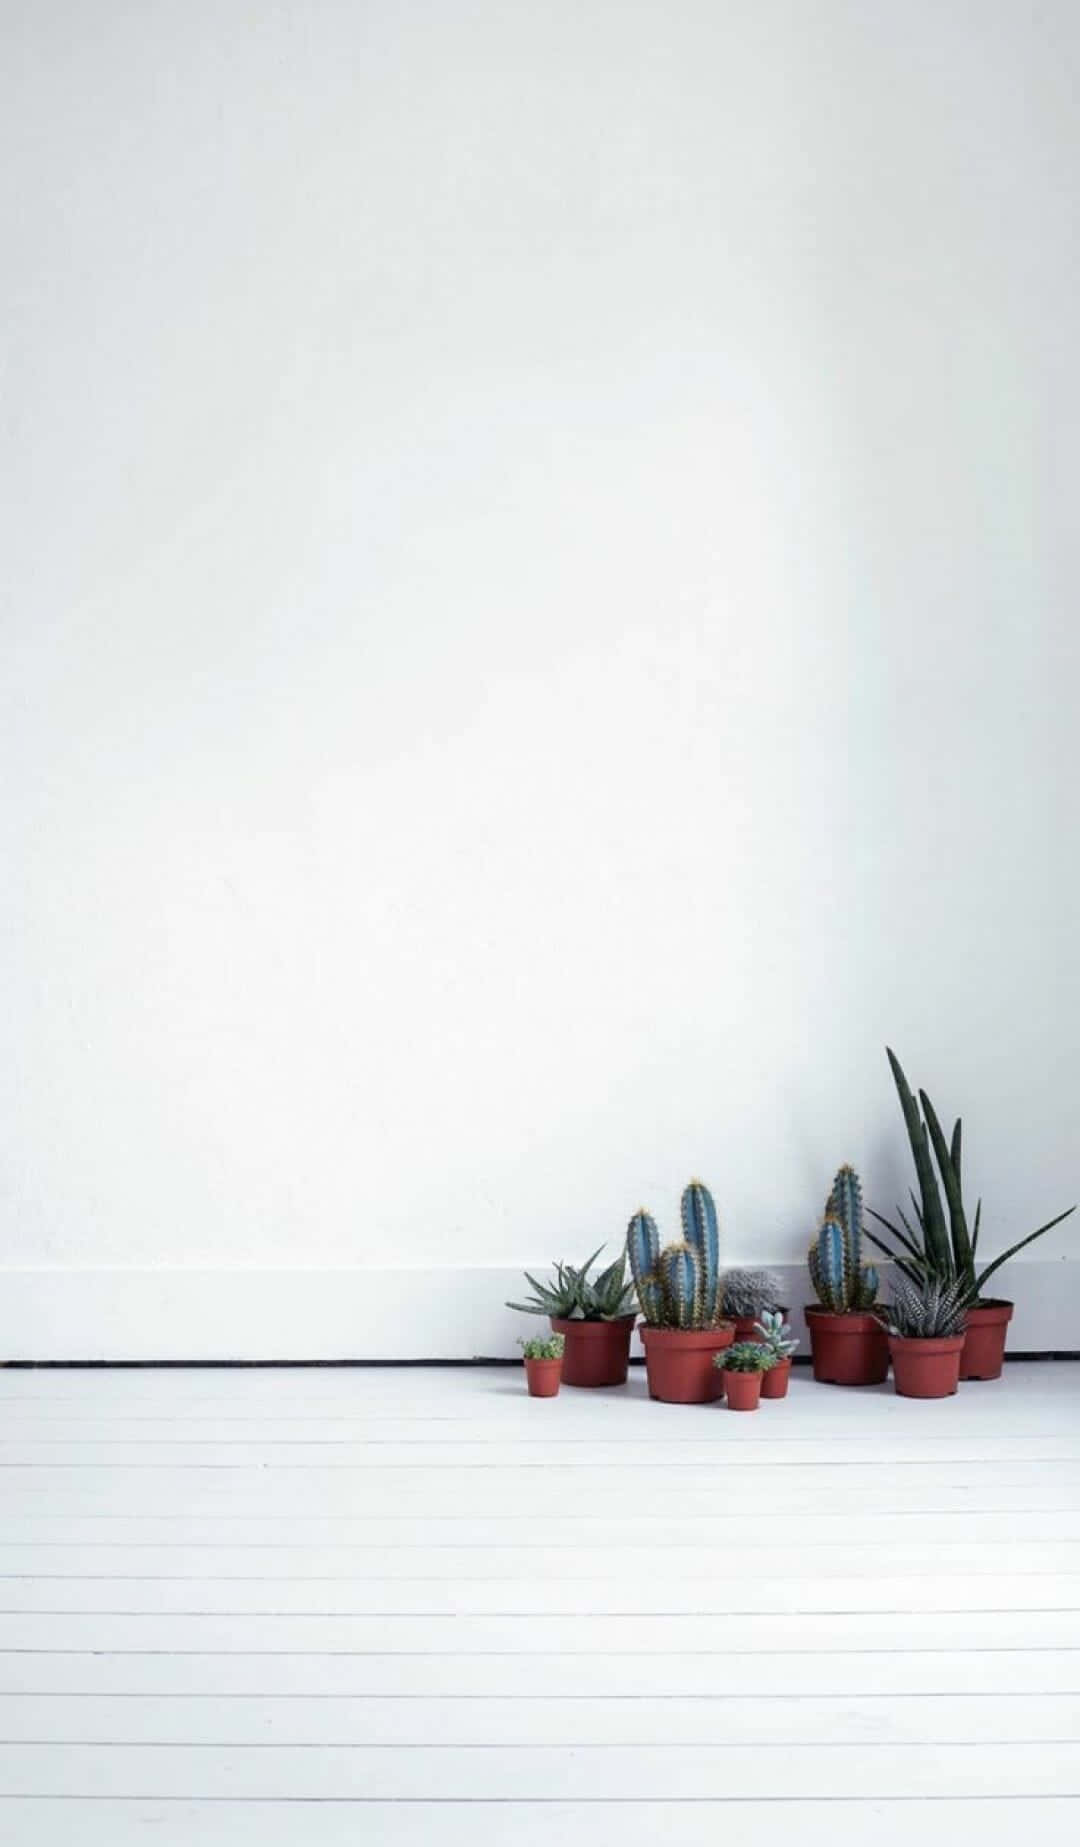 Plantasde Cactus En Un Suelo Blanco Fondo de pantalla